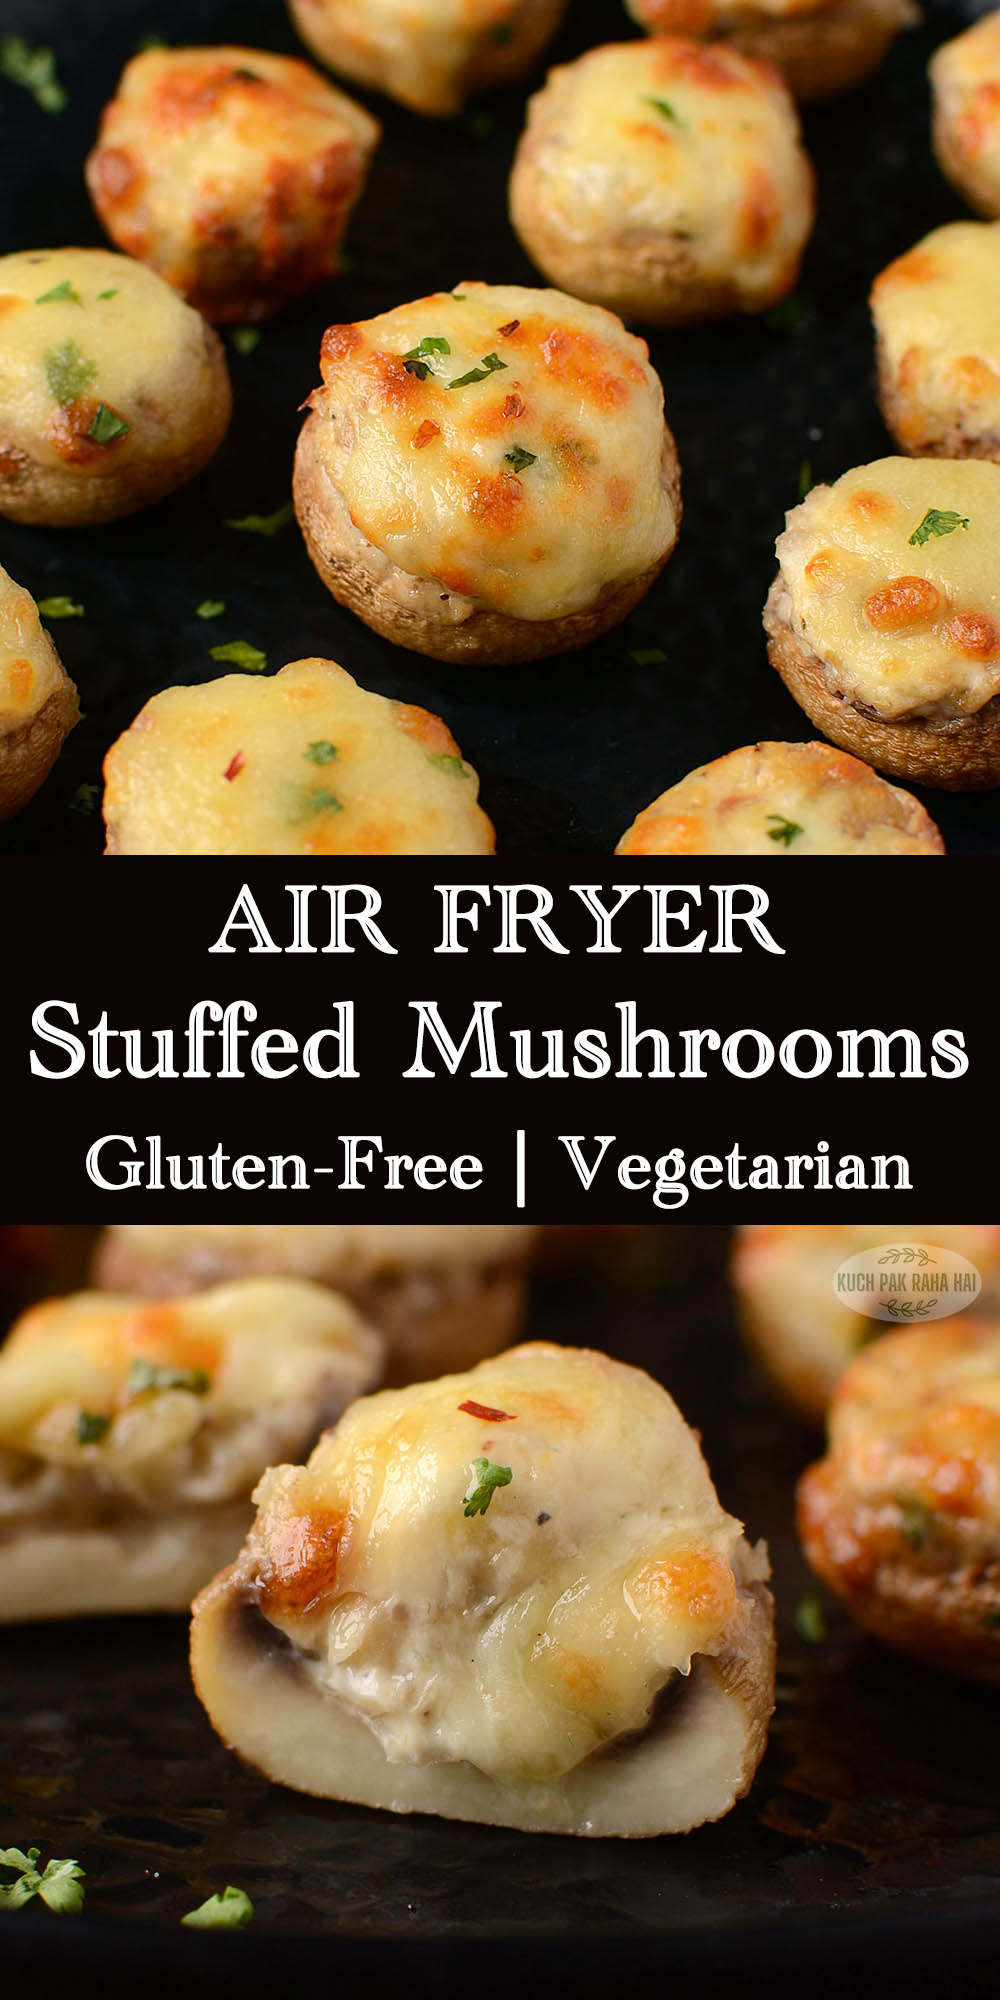 Stuffed mushrooms vegetarian in air fryer.